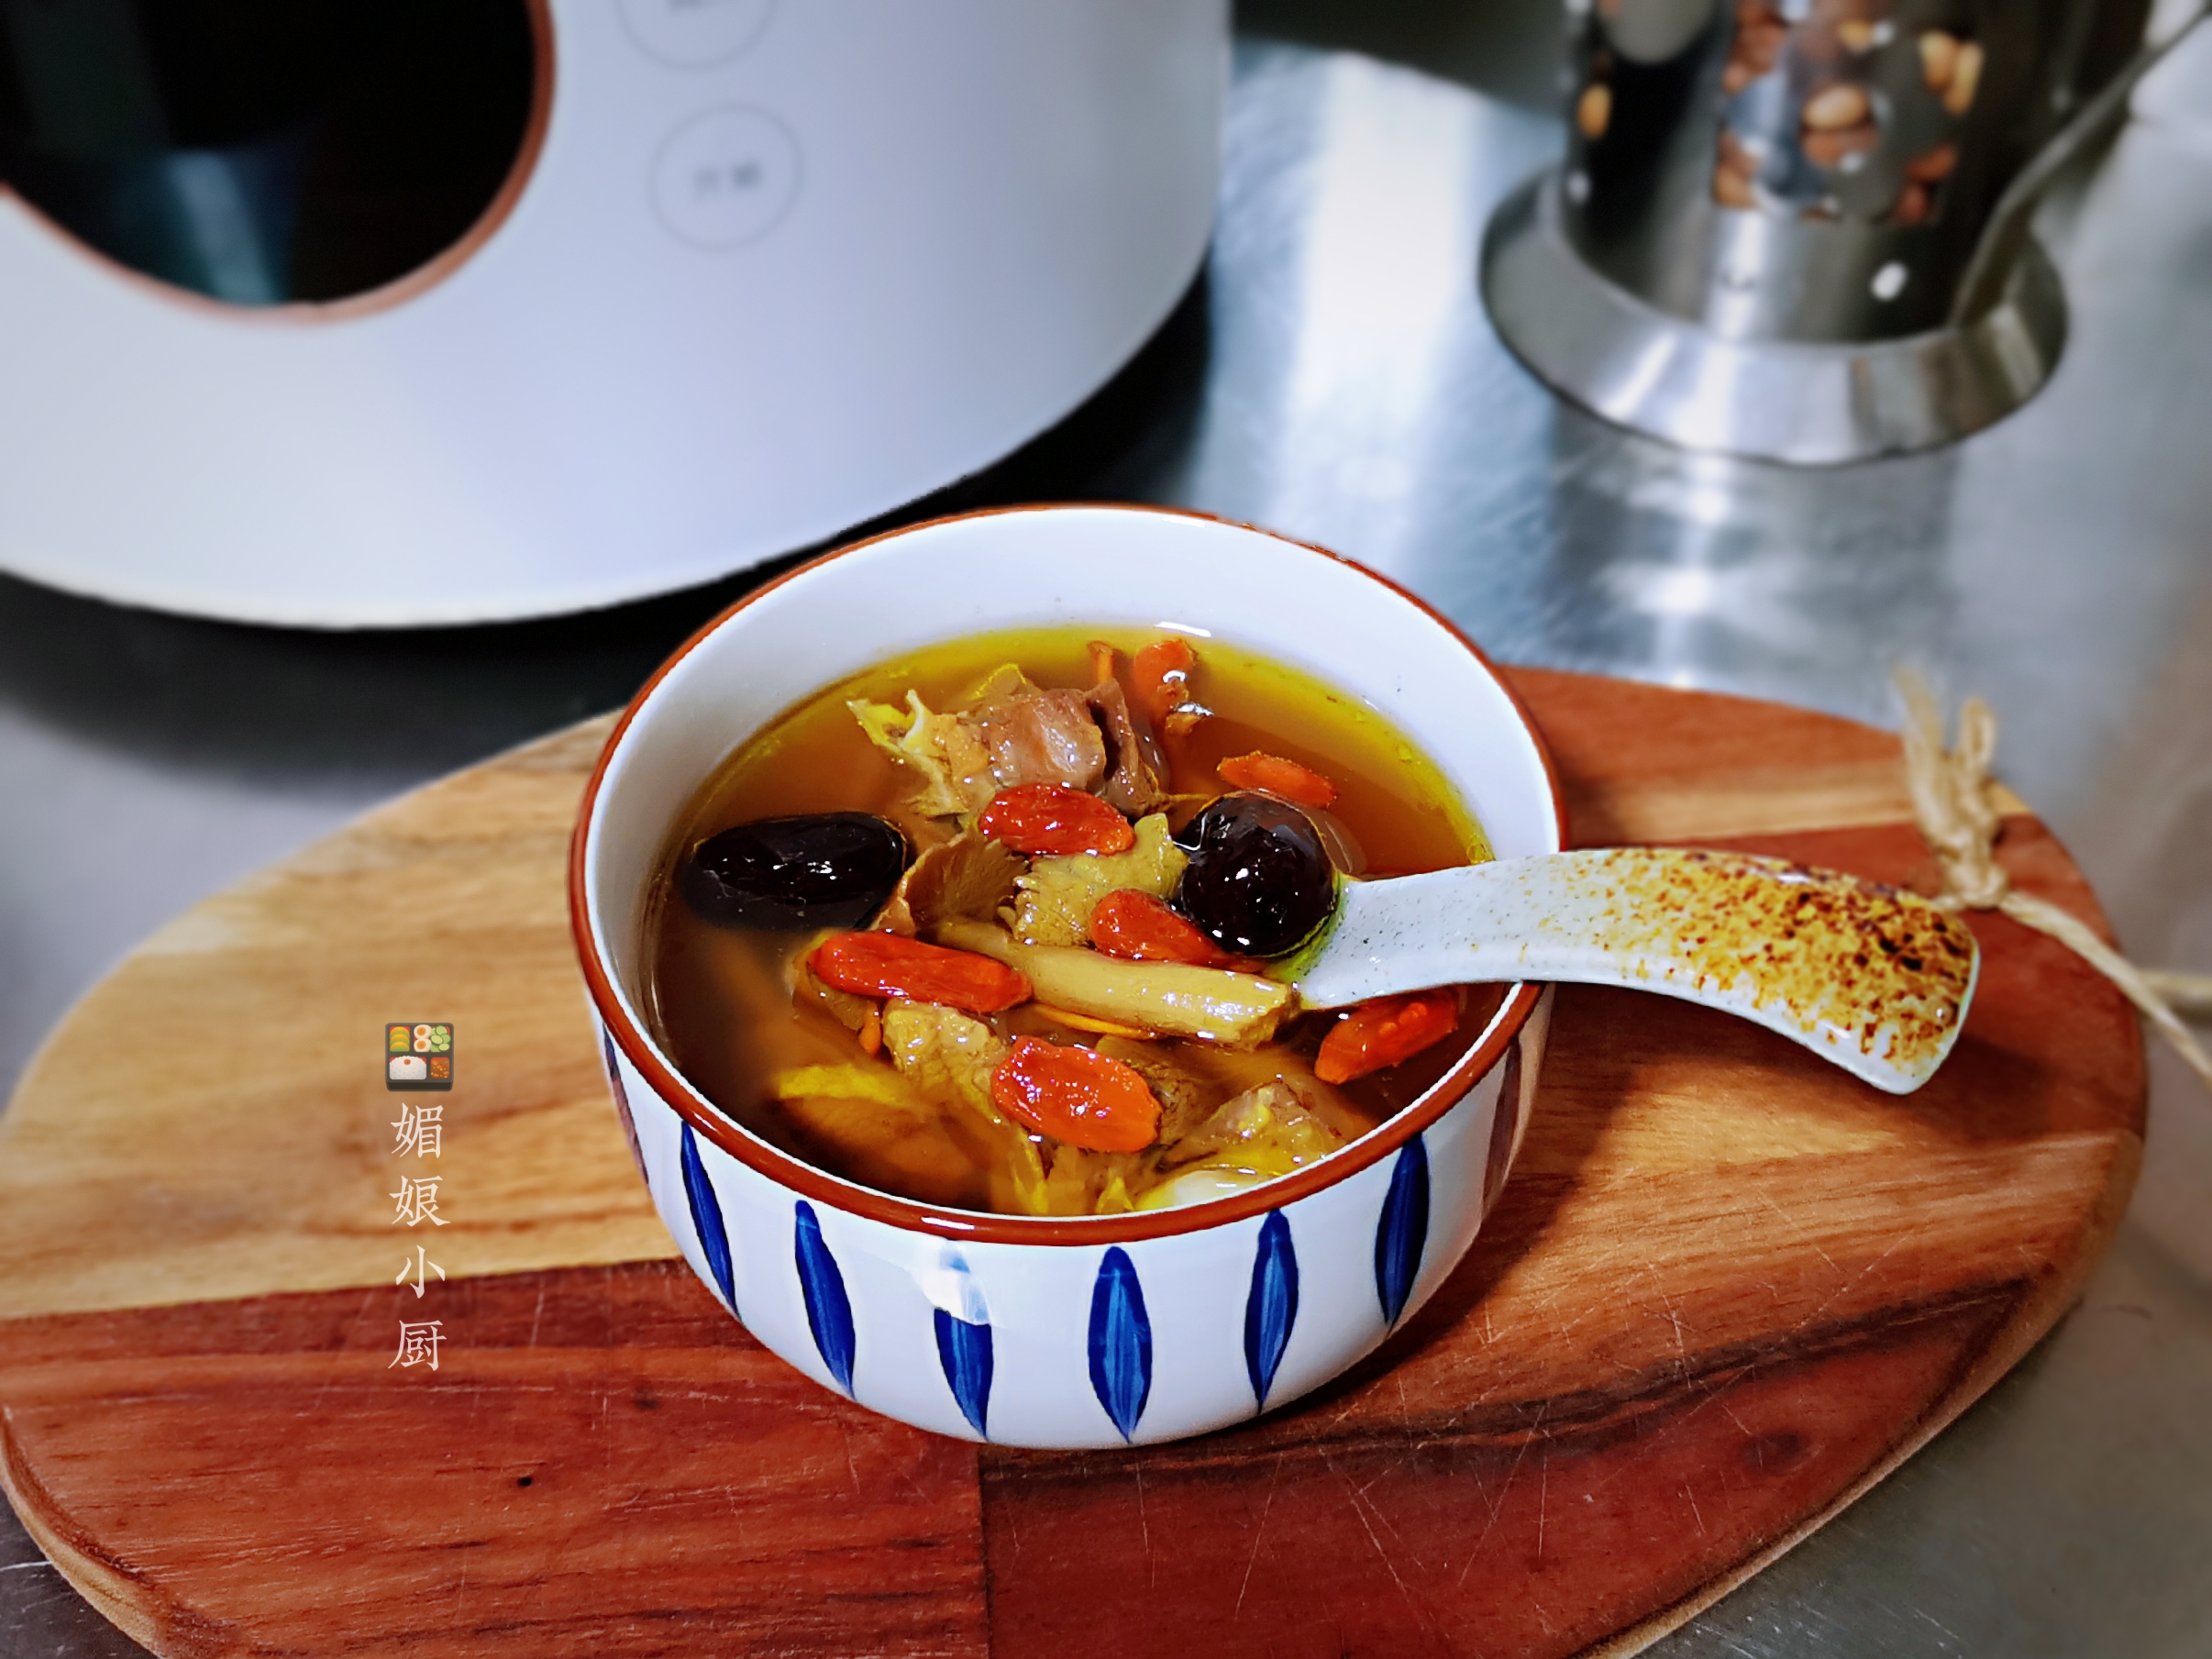 老鸭加新鲜茶树菇和虫草花一起炖汤，只加盐调味，简单营养又美味